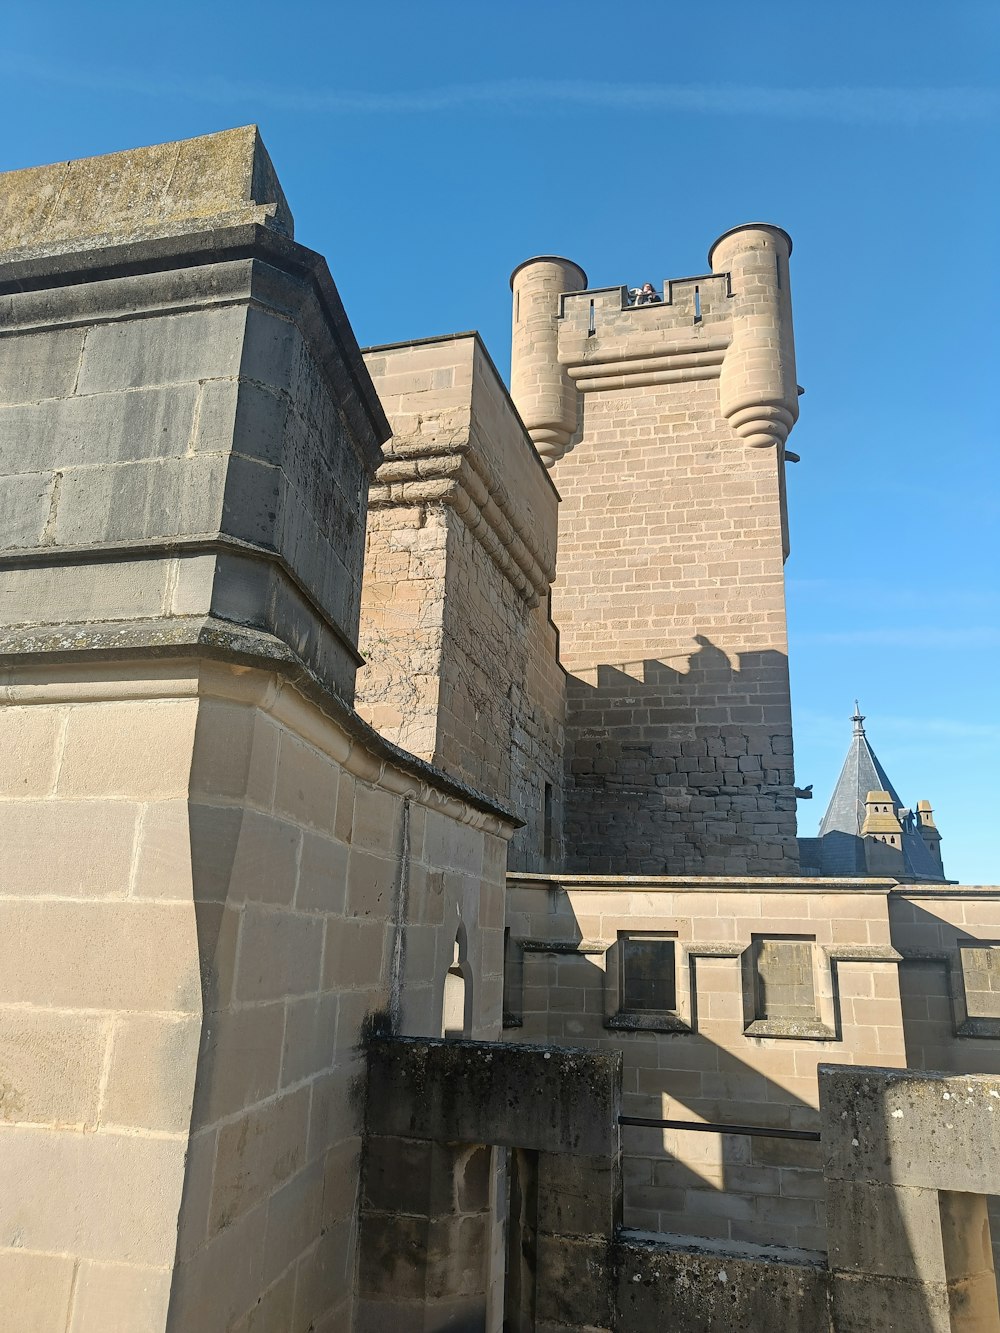 Un bâtiment ressemblant à un château avec une tour de l’horloge